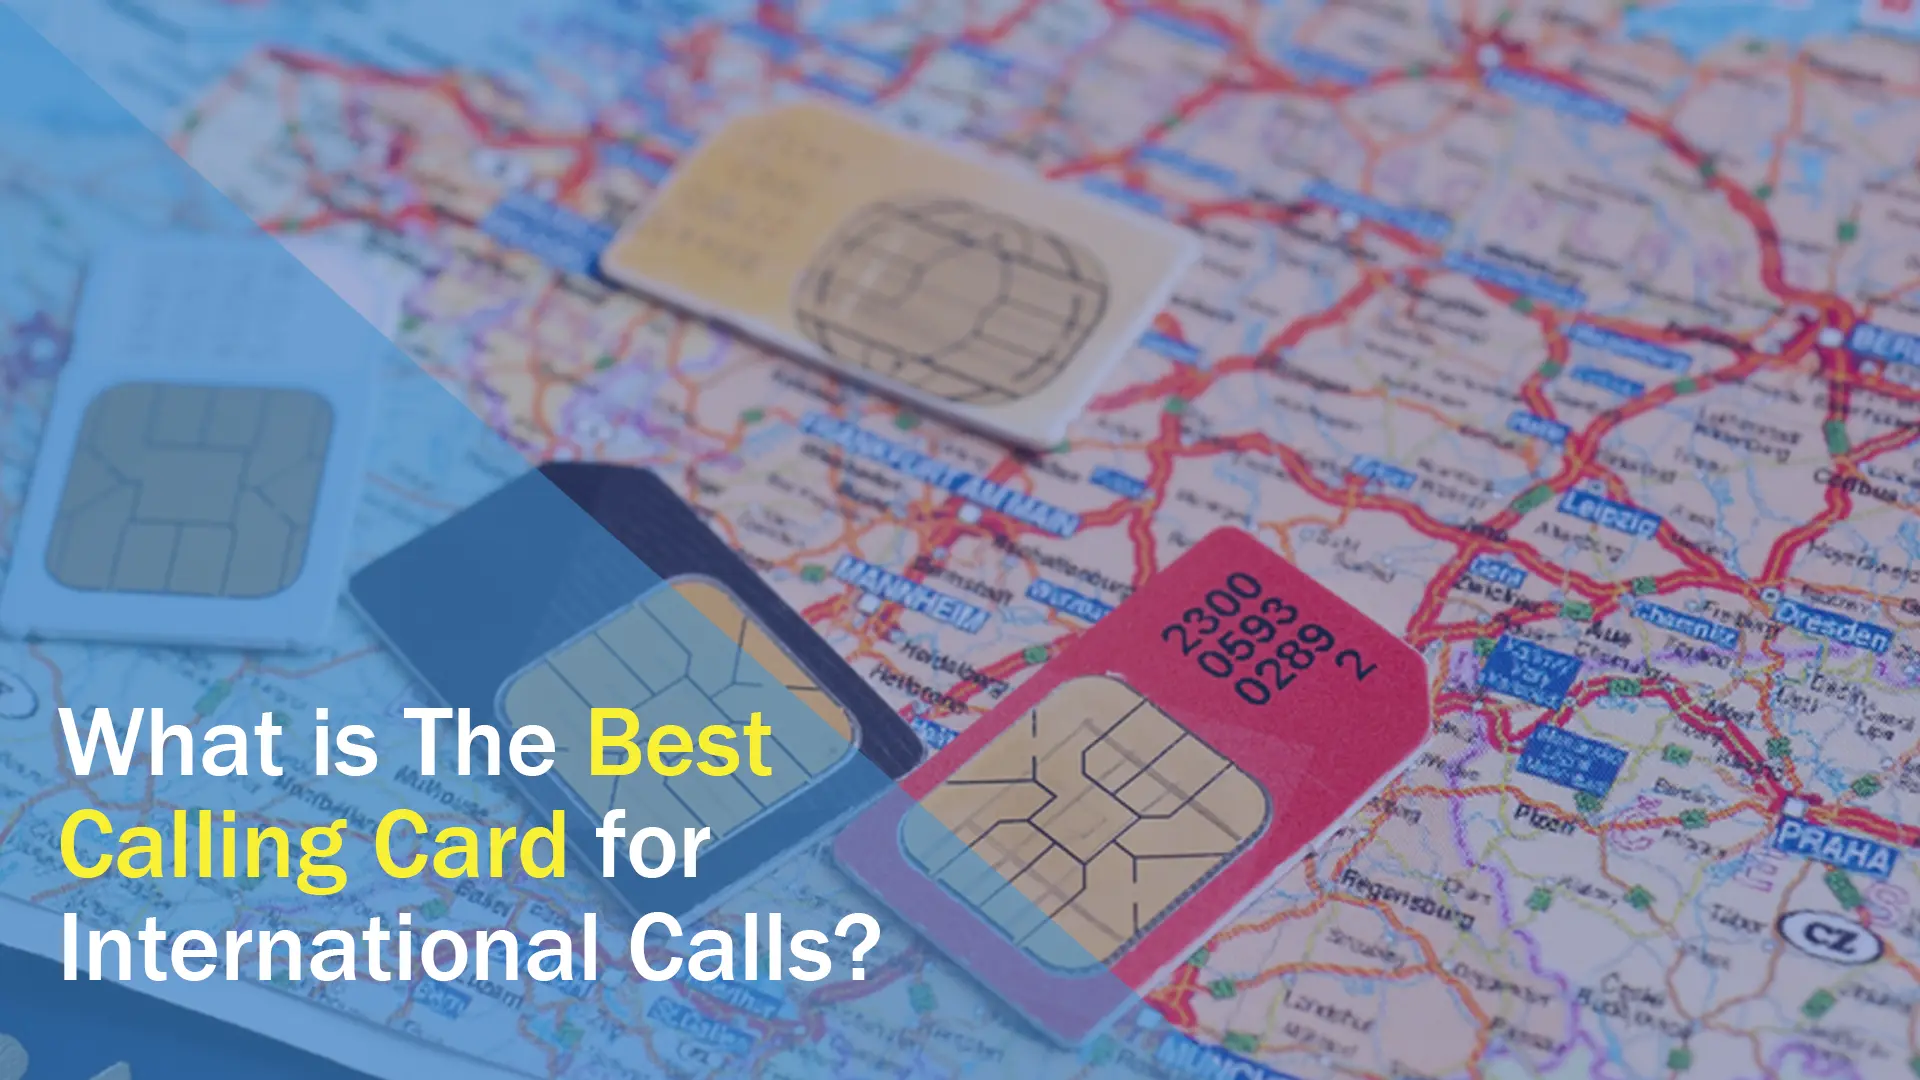 국제전화에 가장 적합한 전화카드는 무엇인가요?, 국제전화